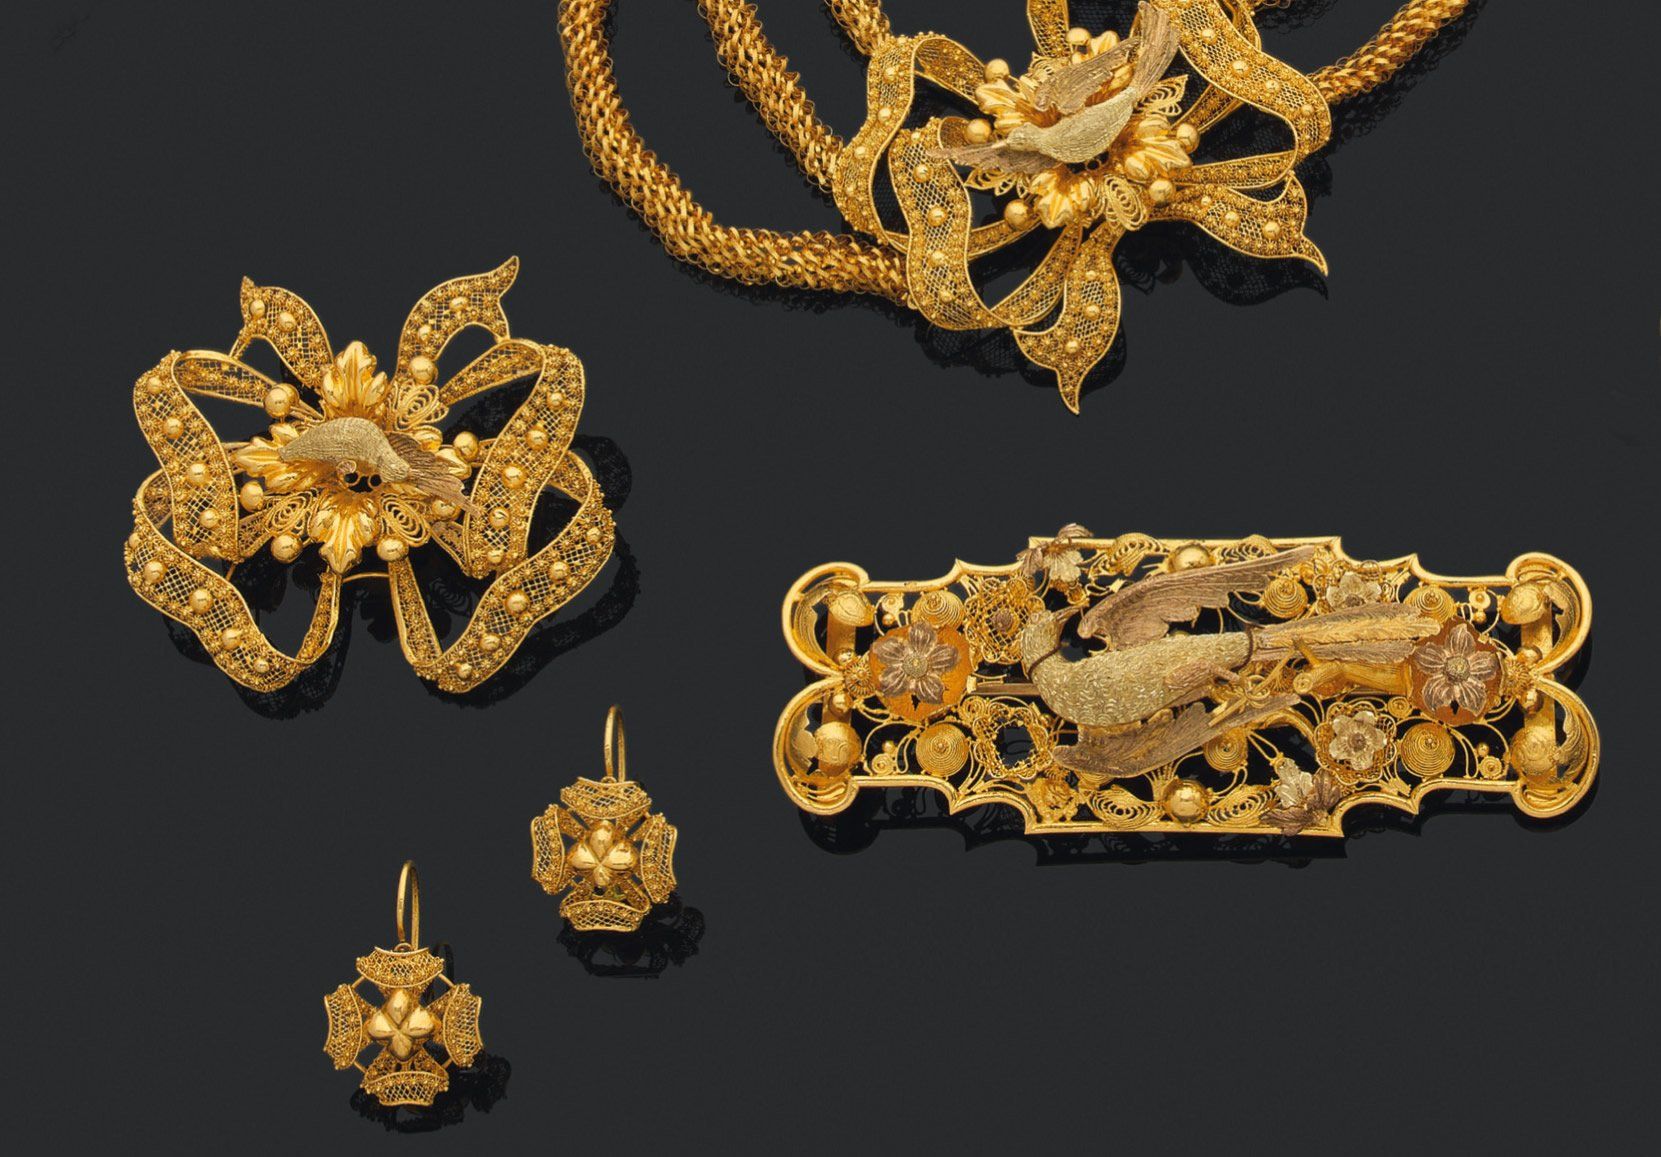 Null 外国作品，可能是中东地区 
一套珠宝首饰 

多色七十五万金，装饰有丝线，异国情调的鸟和花，包括：一条三行项链；两个胸针；一对耳环和三个杂项。 

重&hellip;